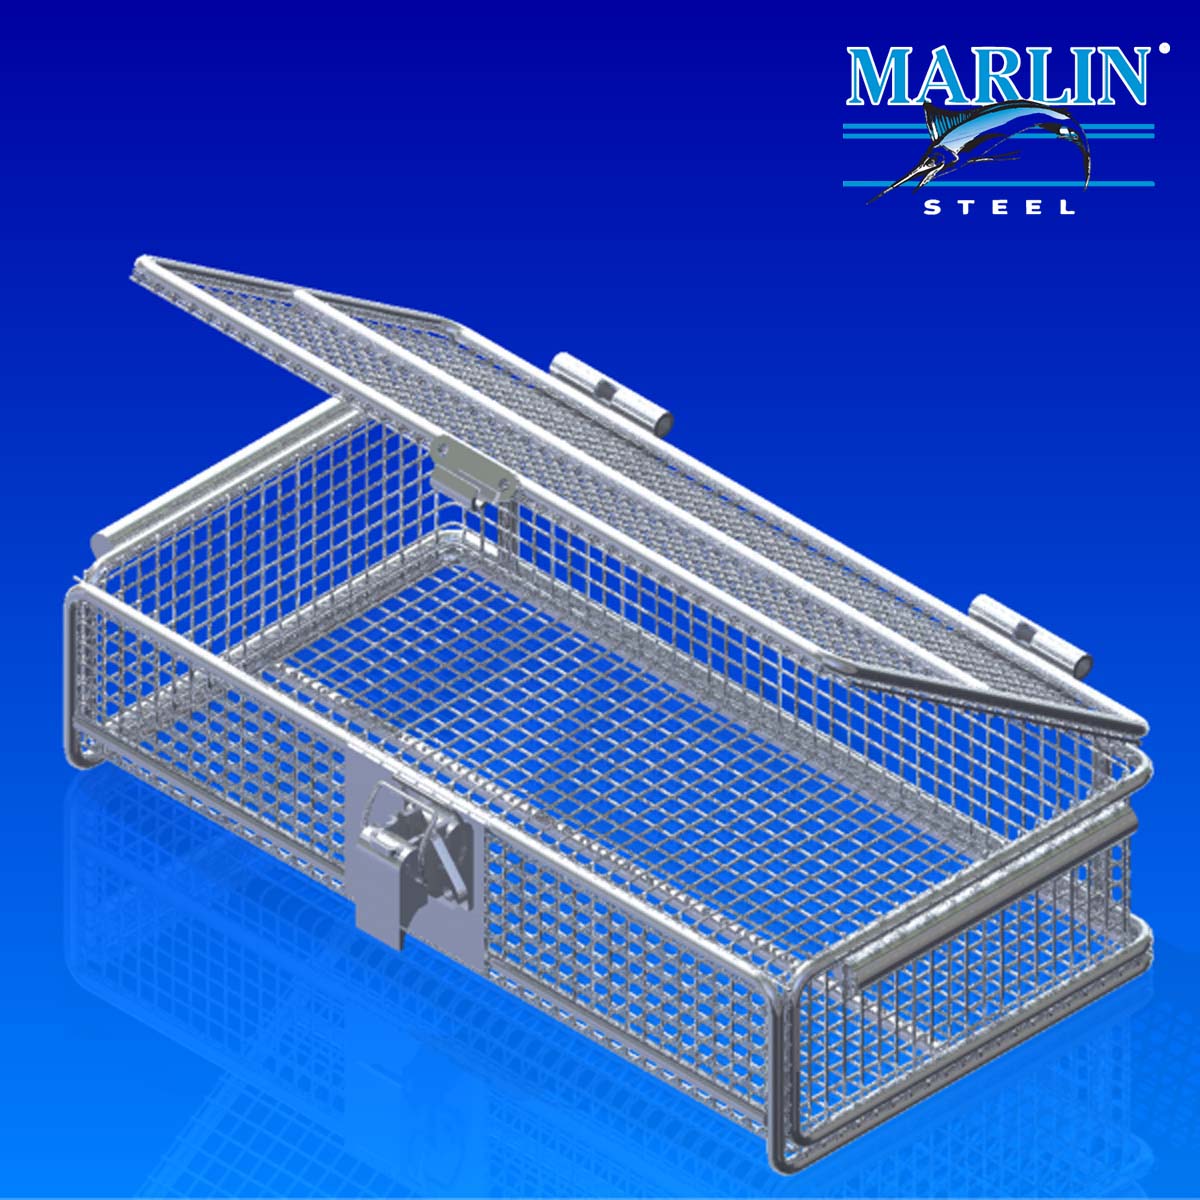 Marlin Steel wire baskets with lids 1062001.jpg